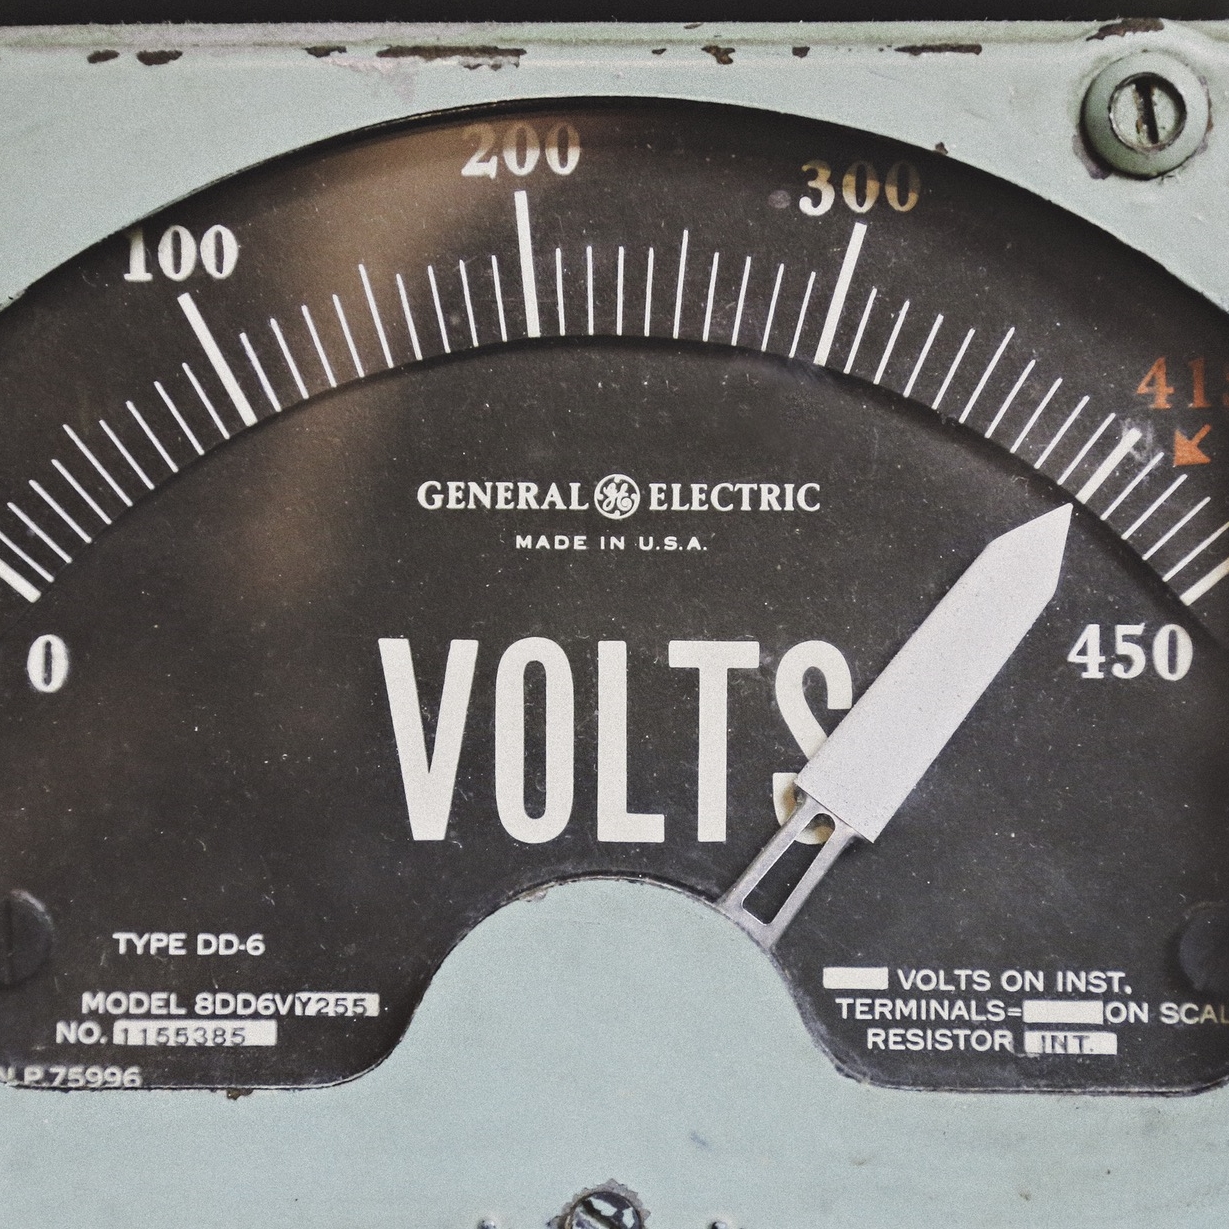 a vintage voltmeter